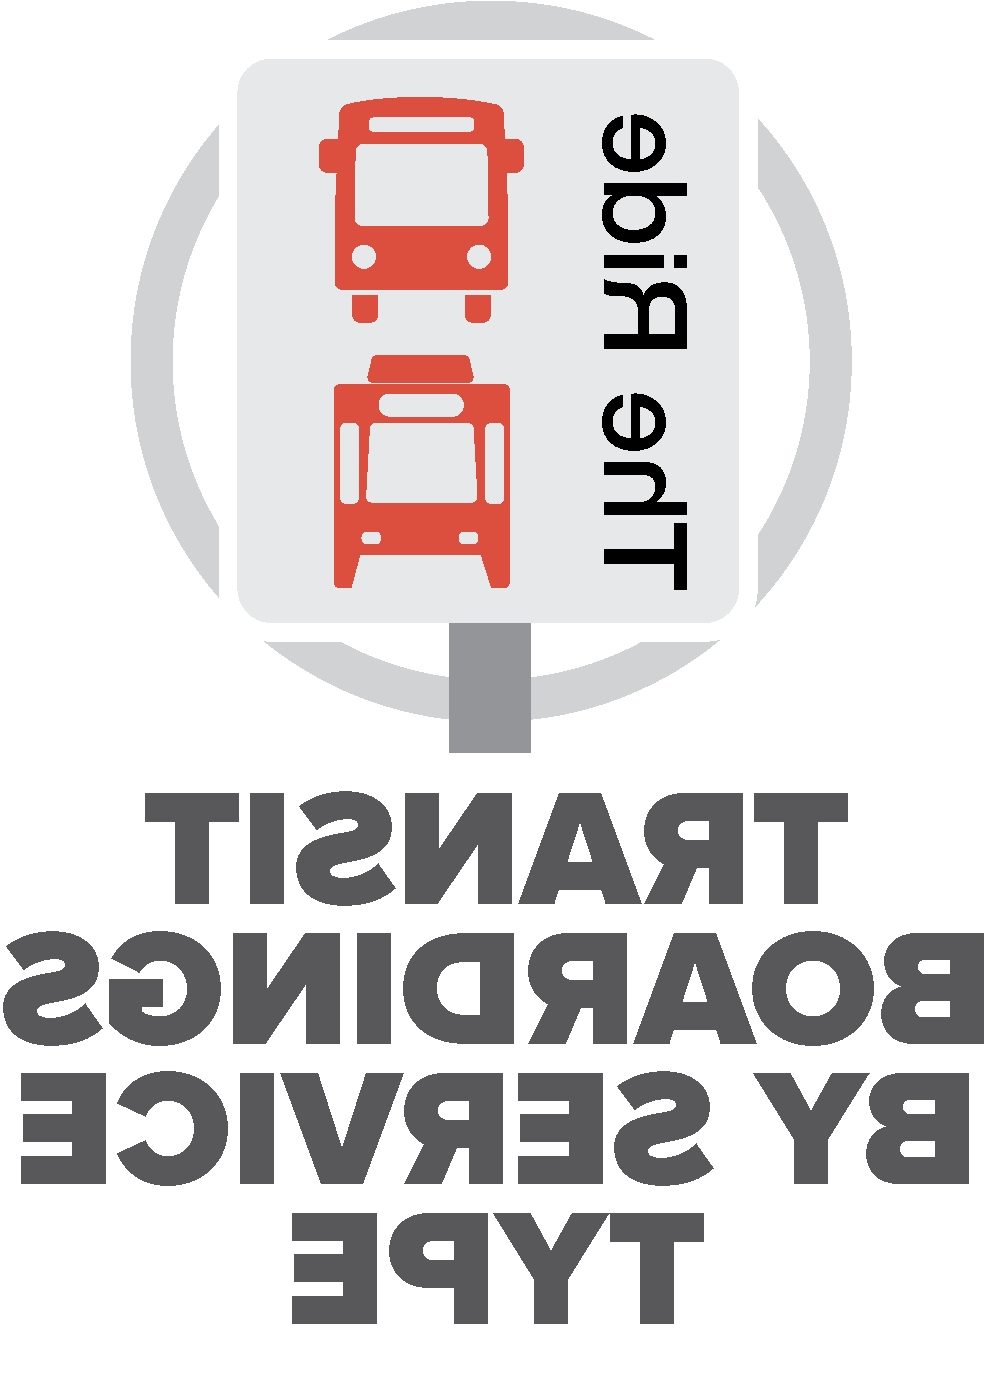 transit boardings by service type